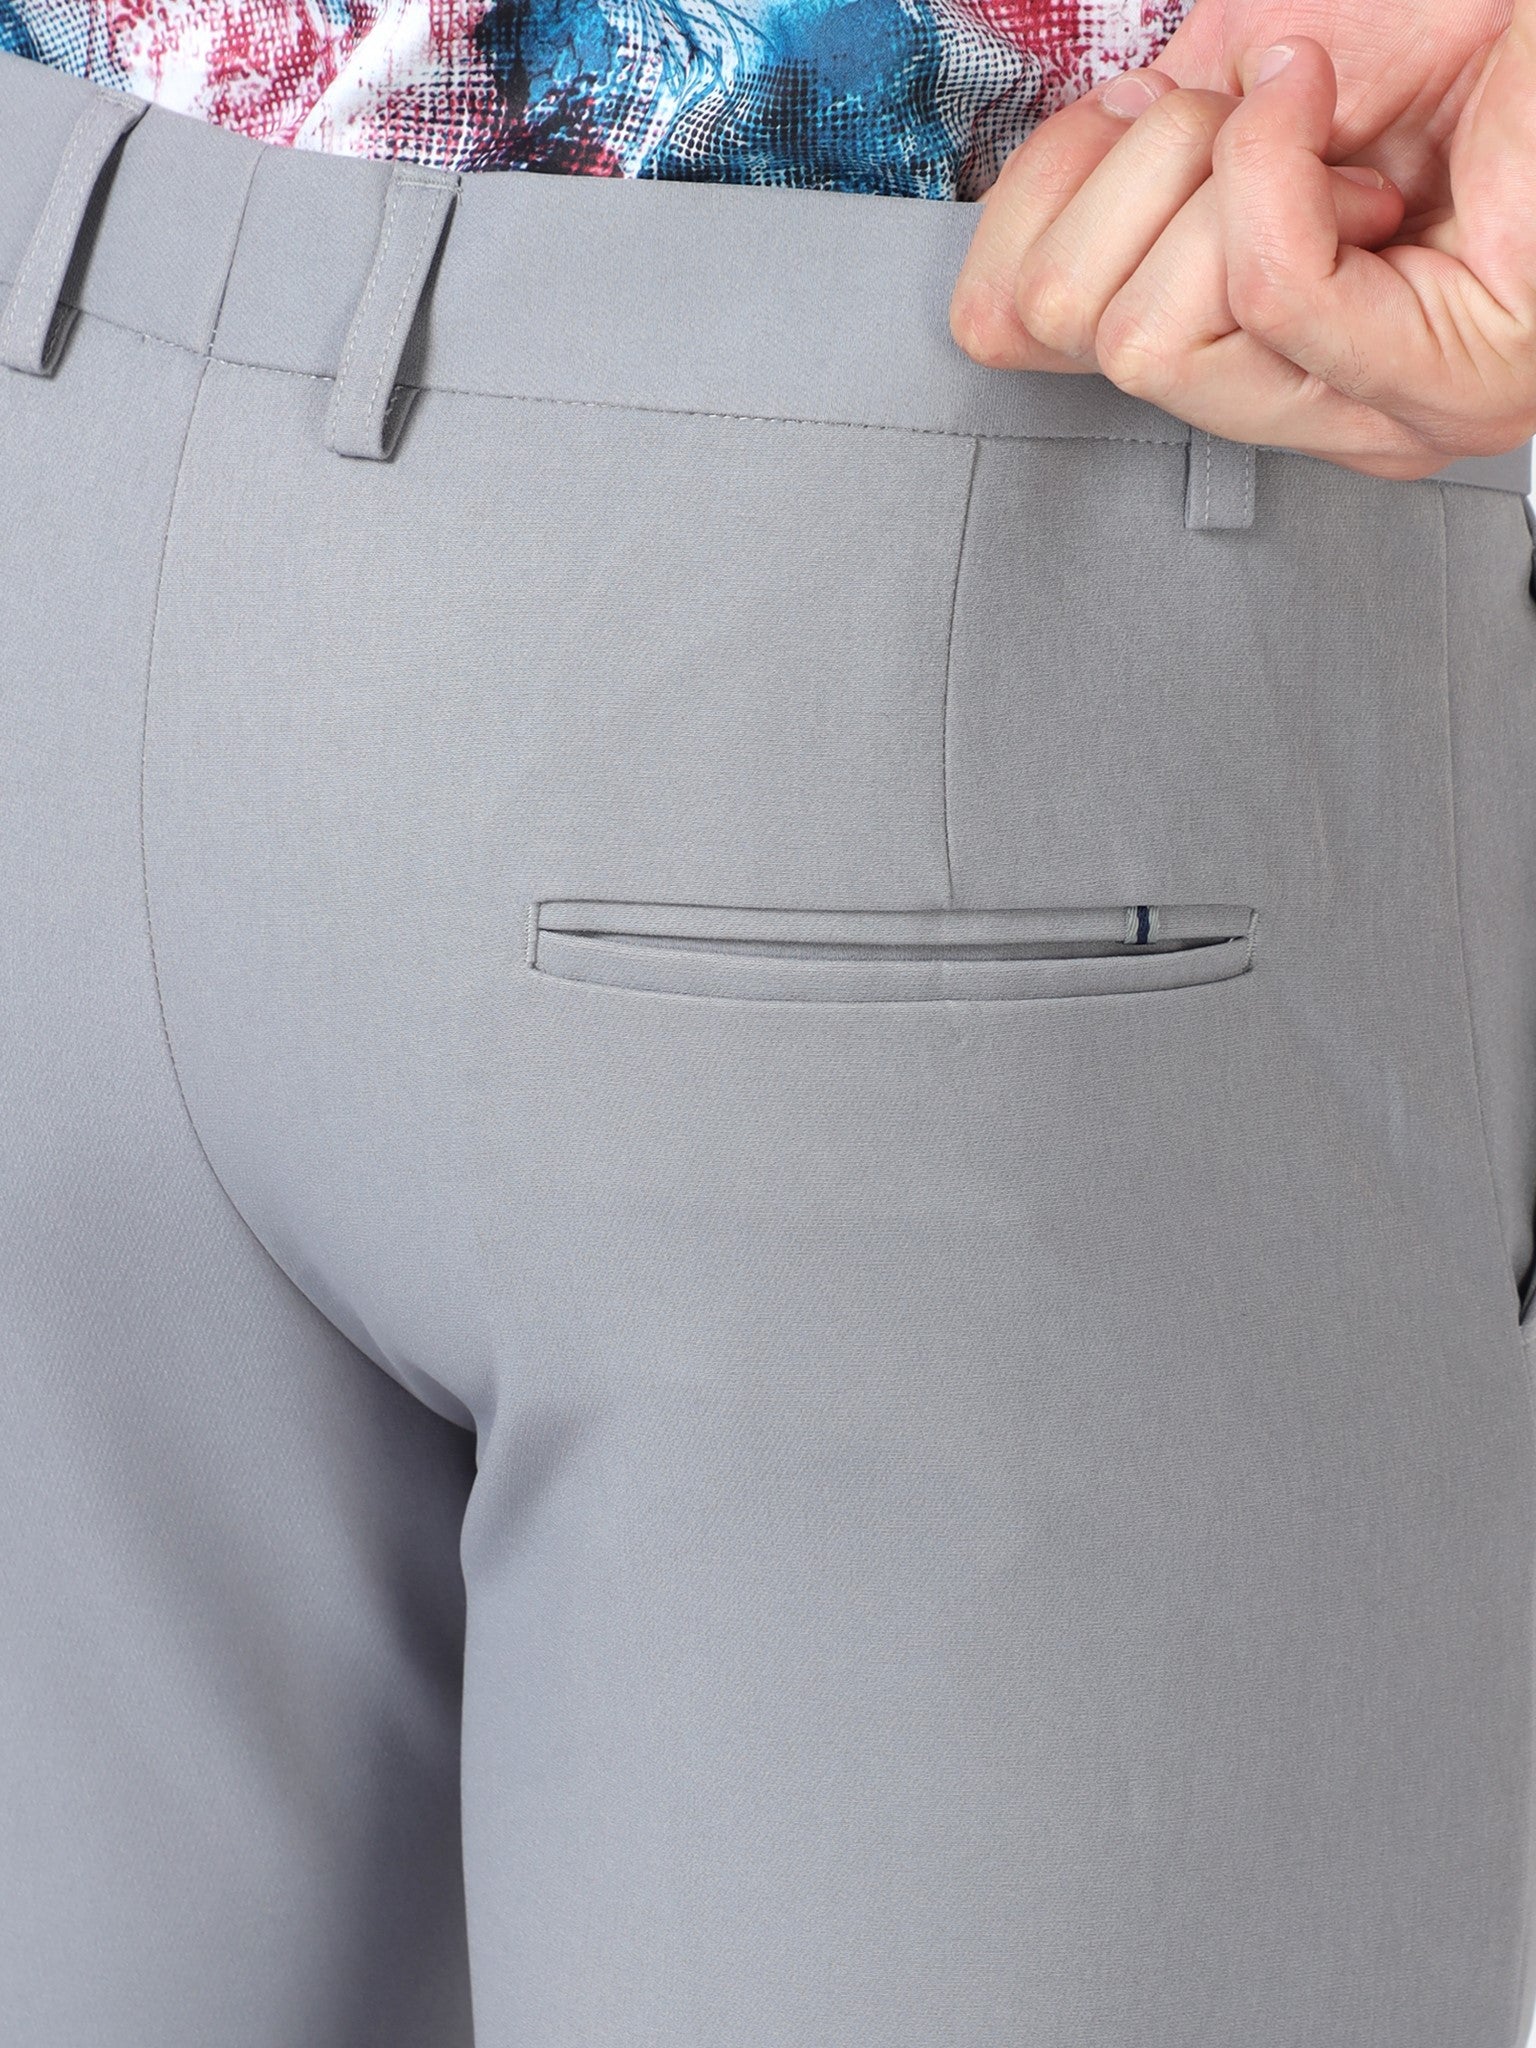 Slack Lava Gray Trouser